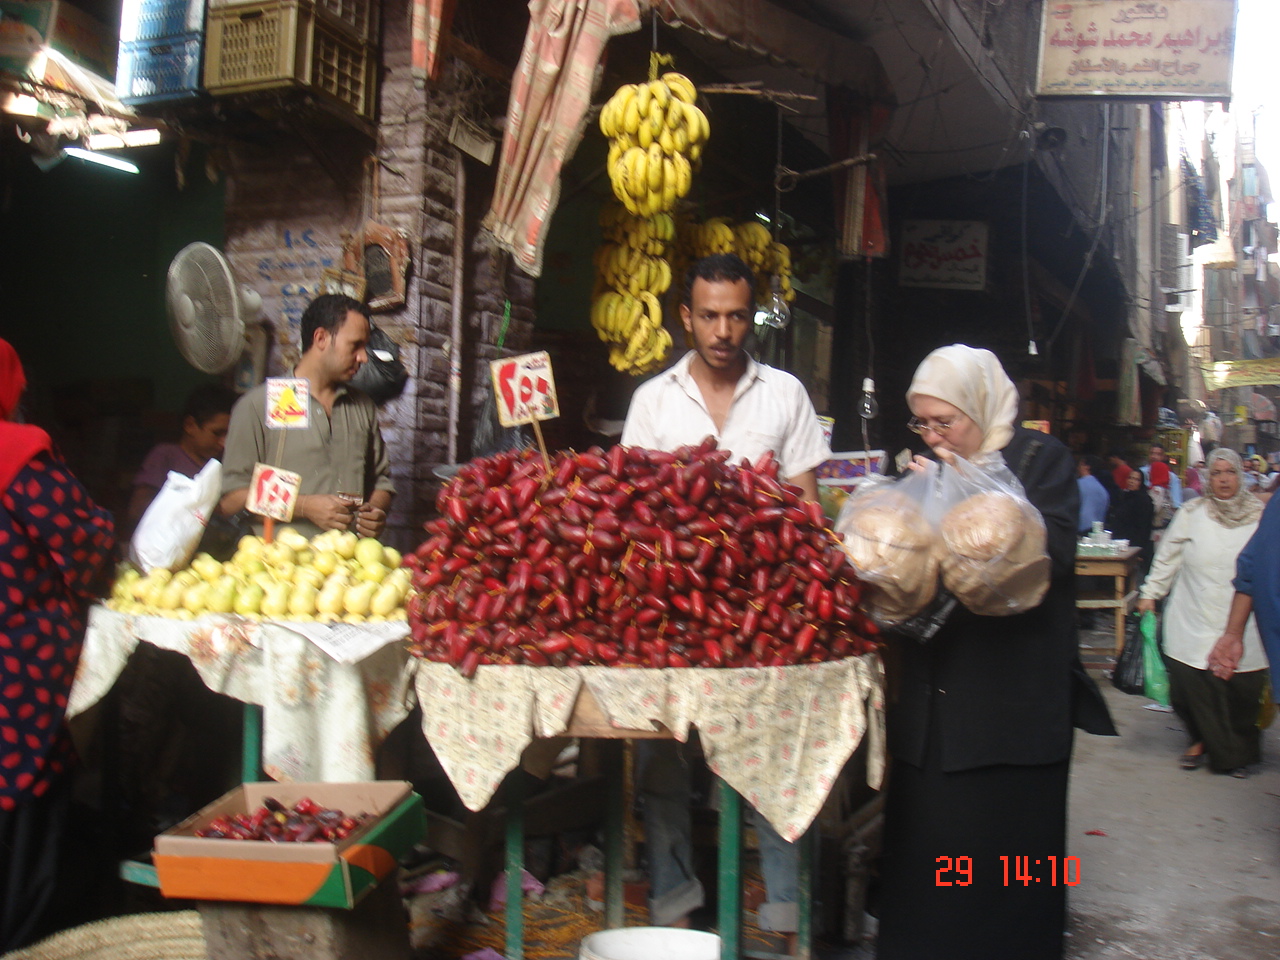 Dans le marché, dattes,gouyaves,bananes ..fruits égyptiens ..!!